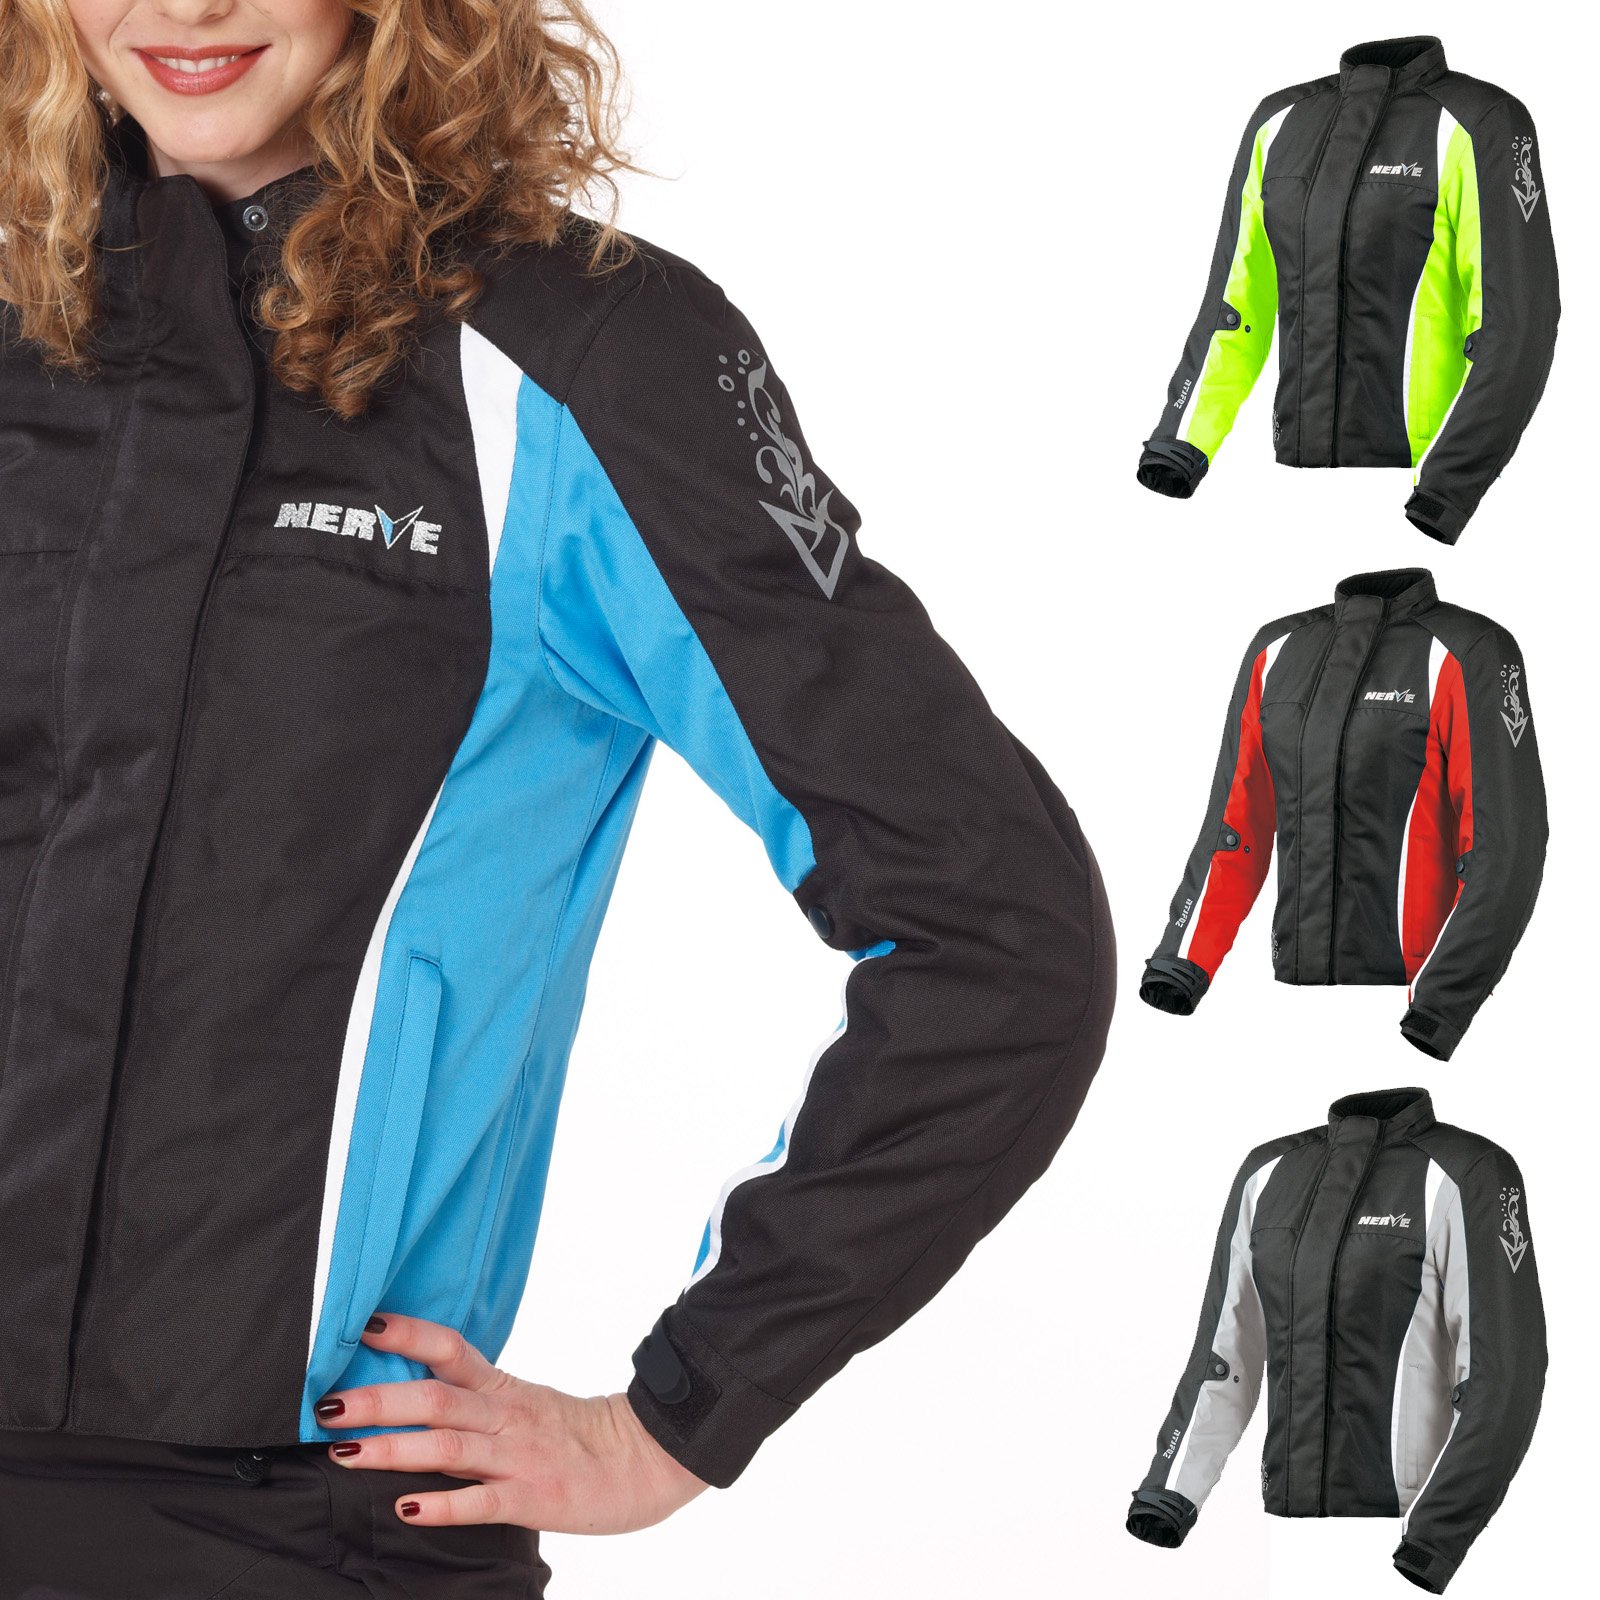 Nerve Shop Motorradjacke -Unique- Motorrad Damen Wasserdicht Jacke mit Protektoren Sommer Winter Textil Frauen - schwarz-blau - 42